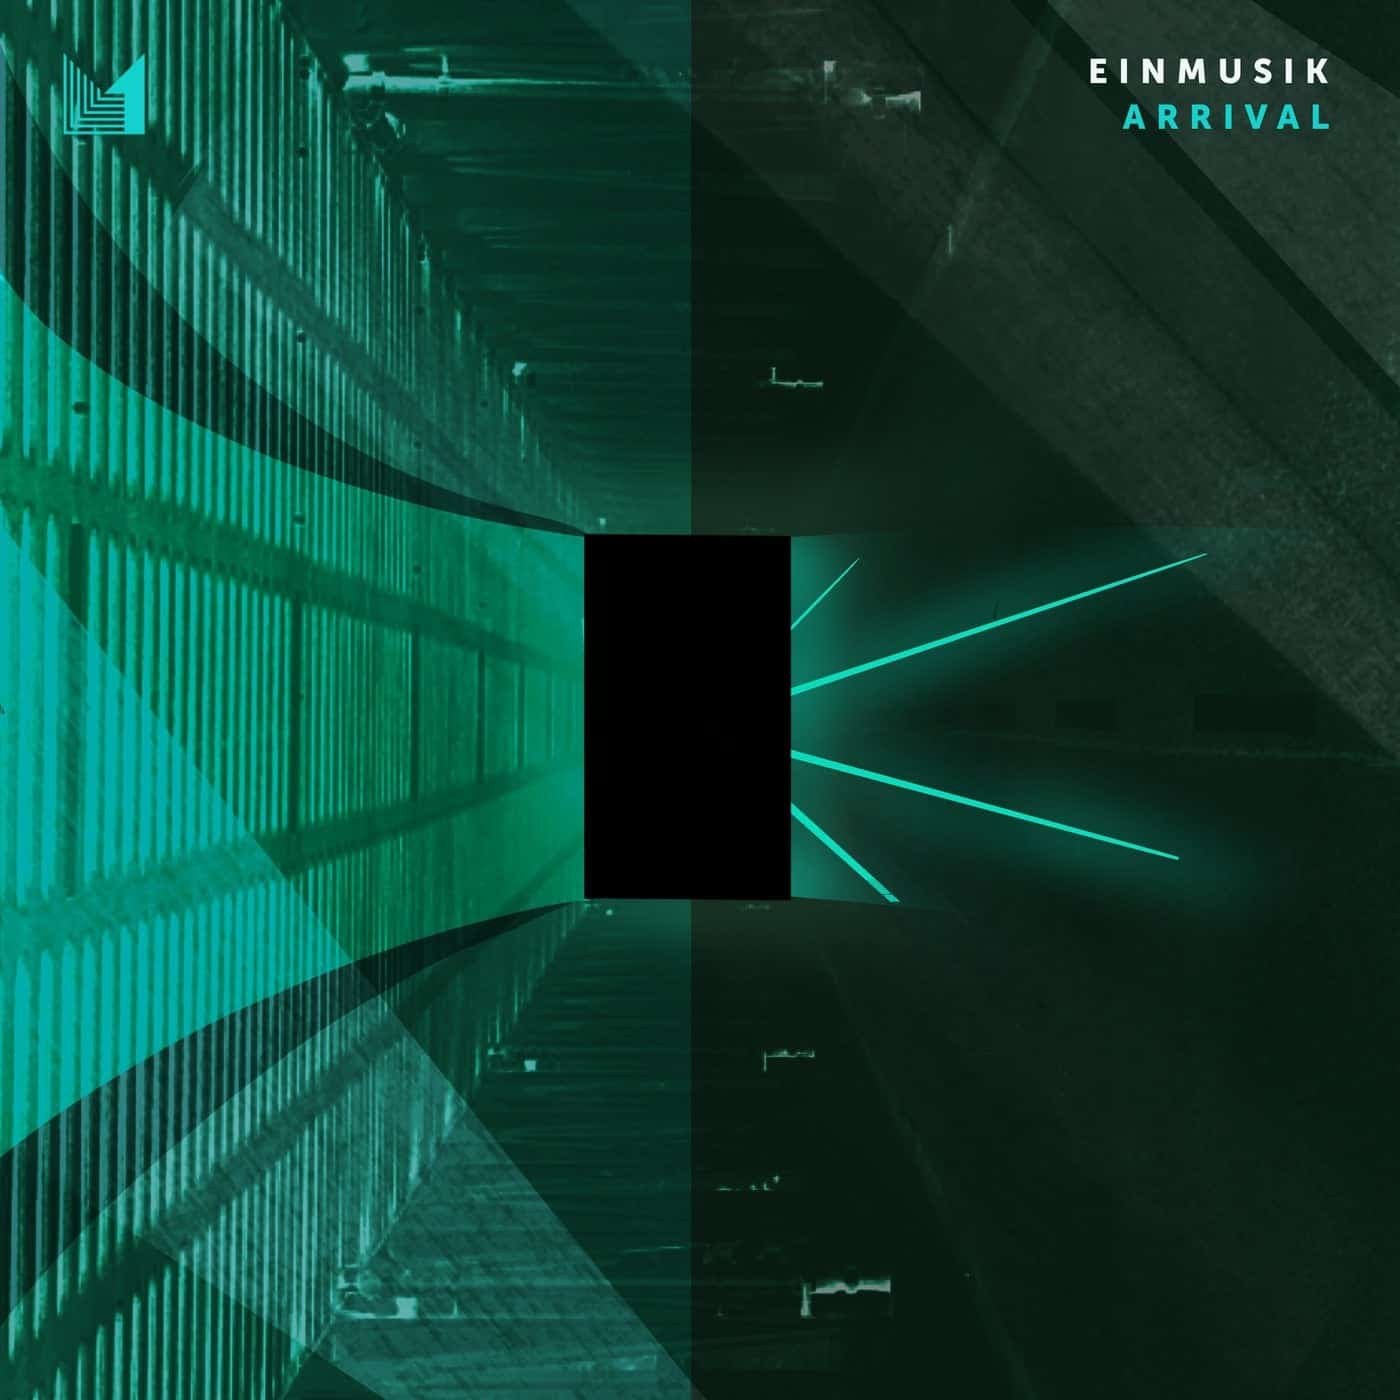 Download Einmusik - Arrival on Electrobuzz